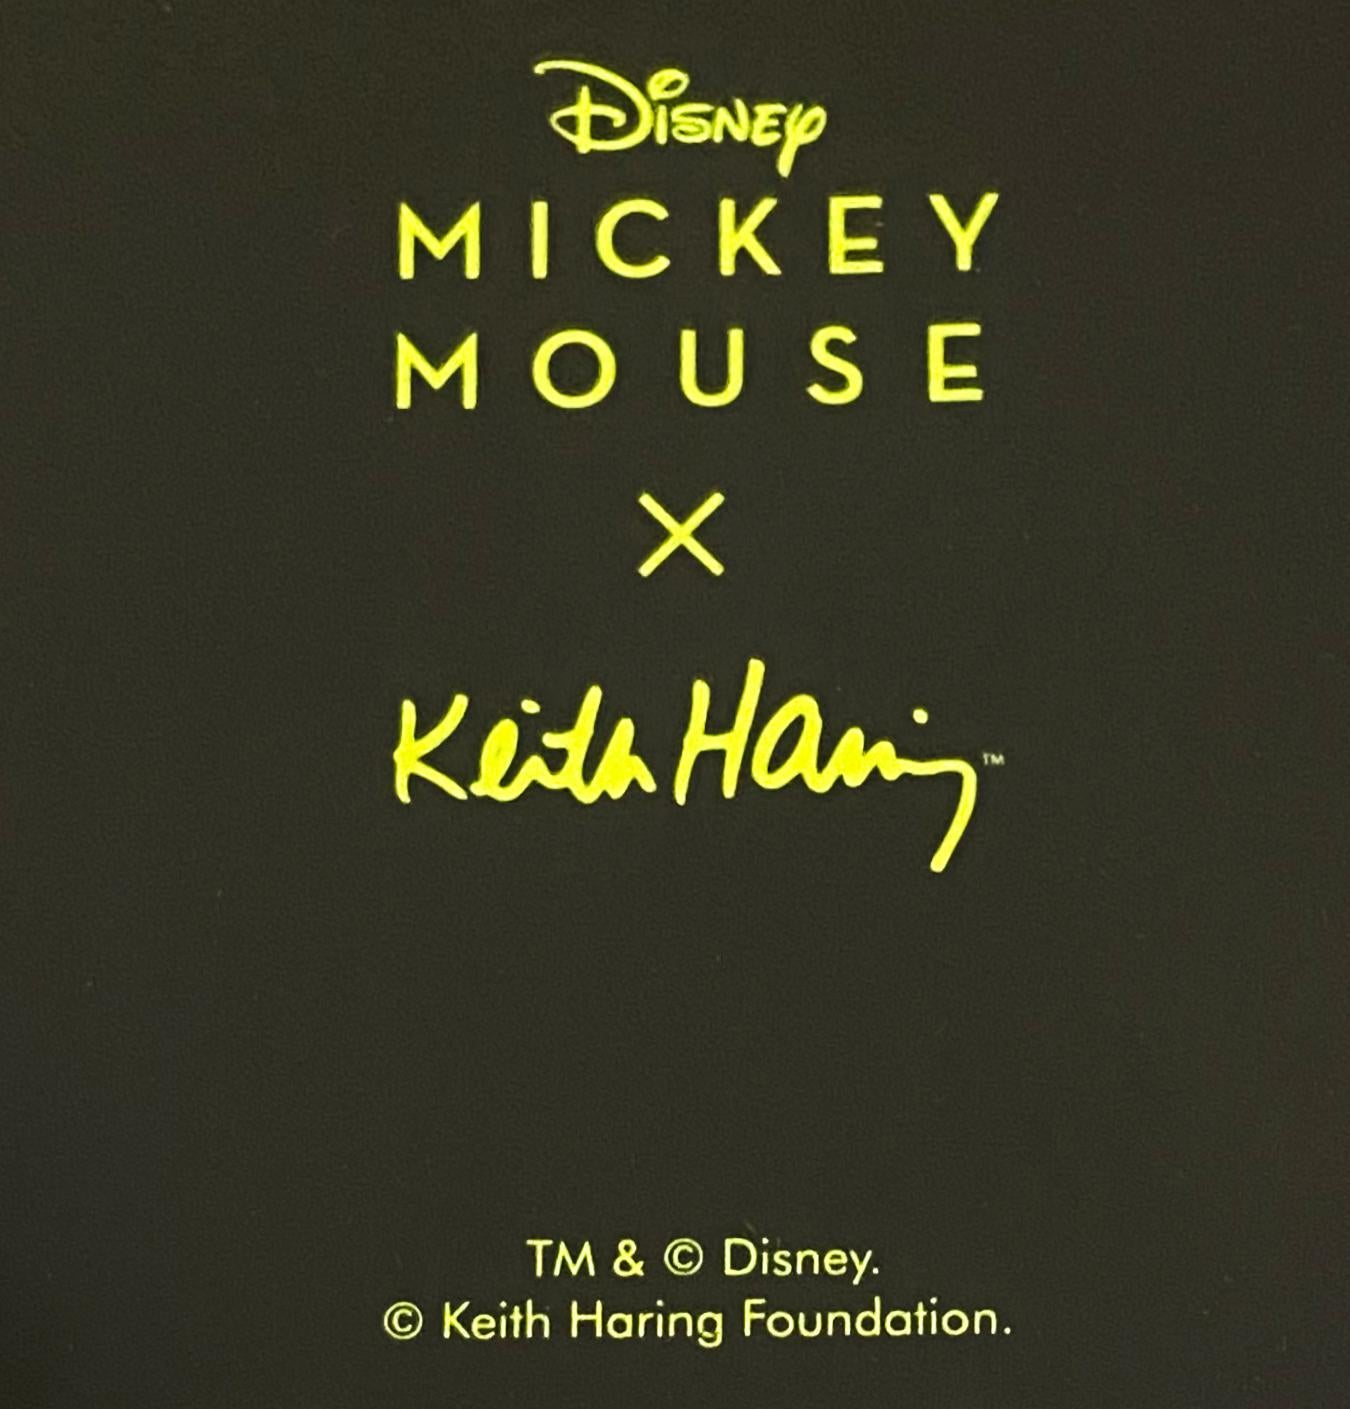 Keith Haring Mickey Mouse Skateboard Deck:
Außergewöhnliches Keith Haring Skateboard Deck mit satten, leuchtenden, lustigen Farben und dem klassischen Keith Haring Mickey Mouse-Motiv der frühen 1980er Jahre. Ein brillantes Stück Haring-Wandkunst,